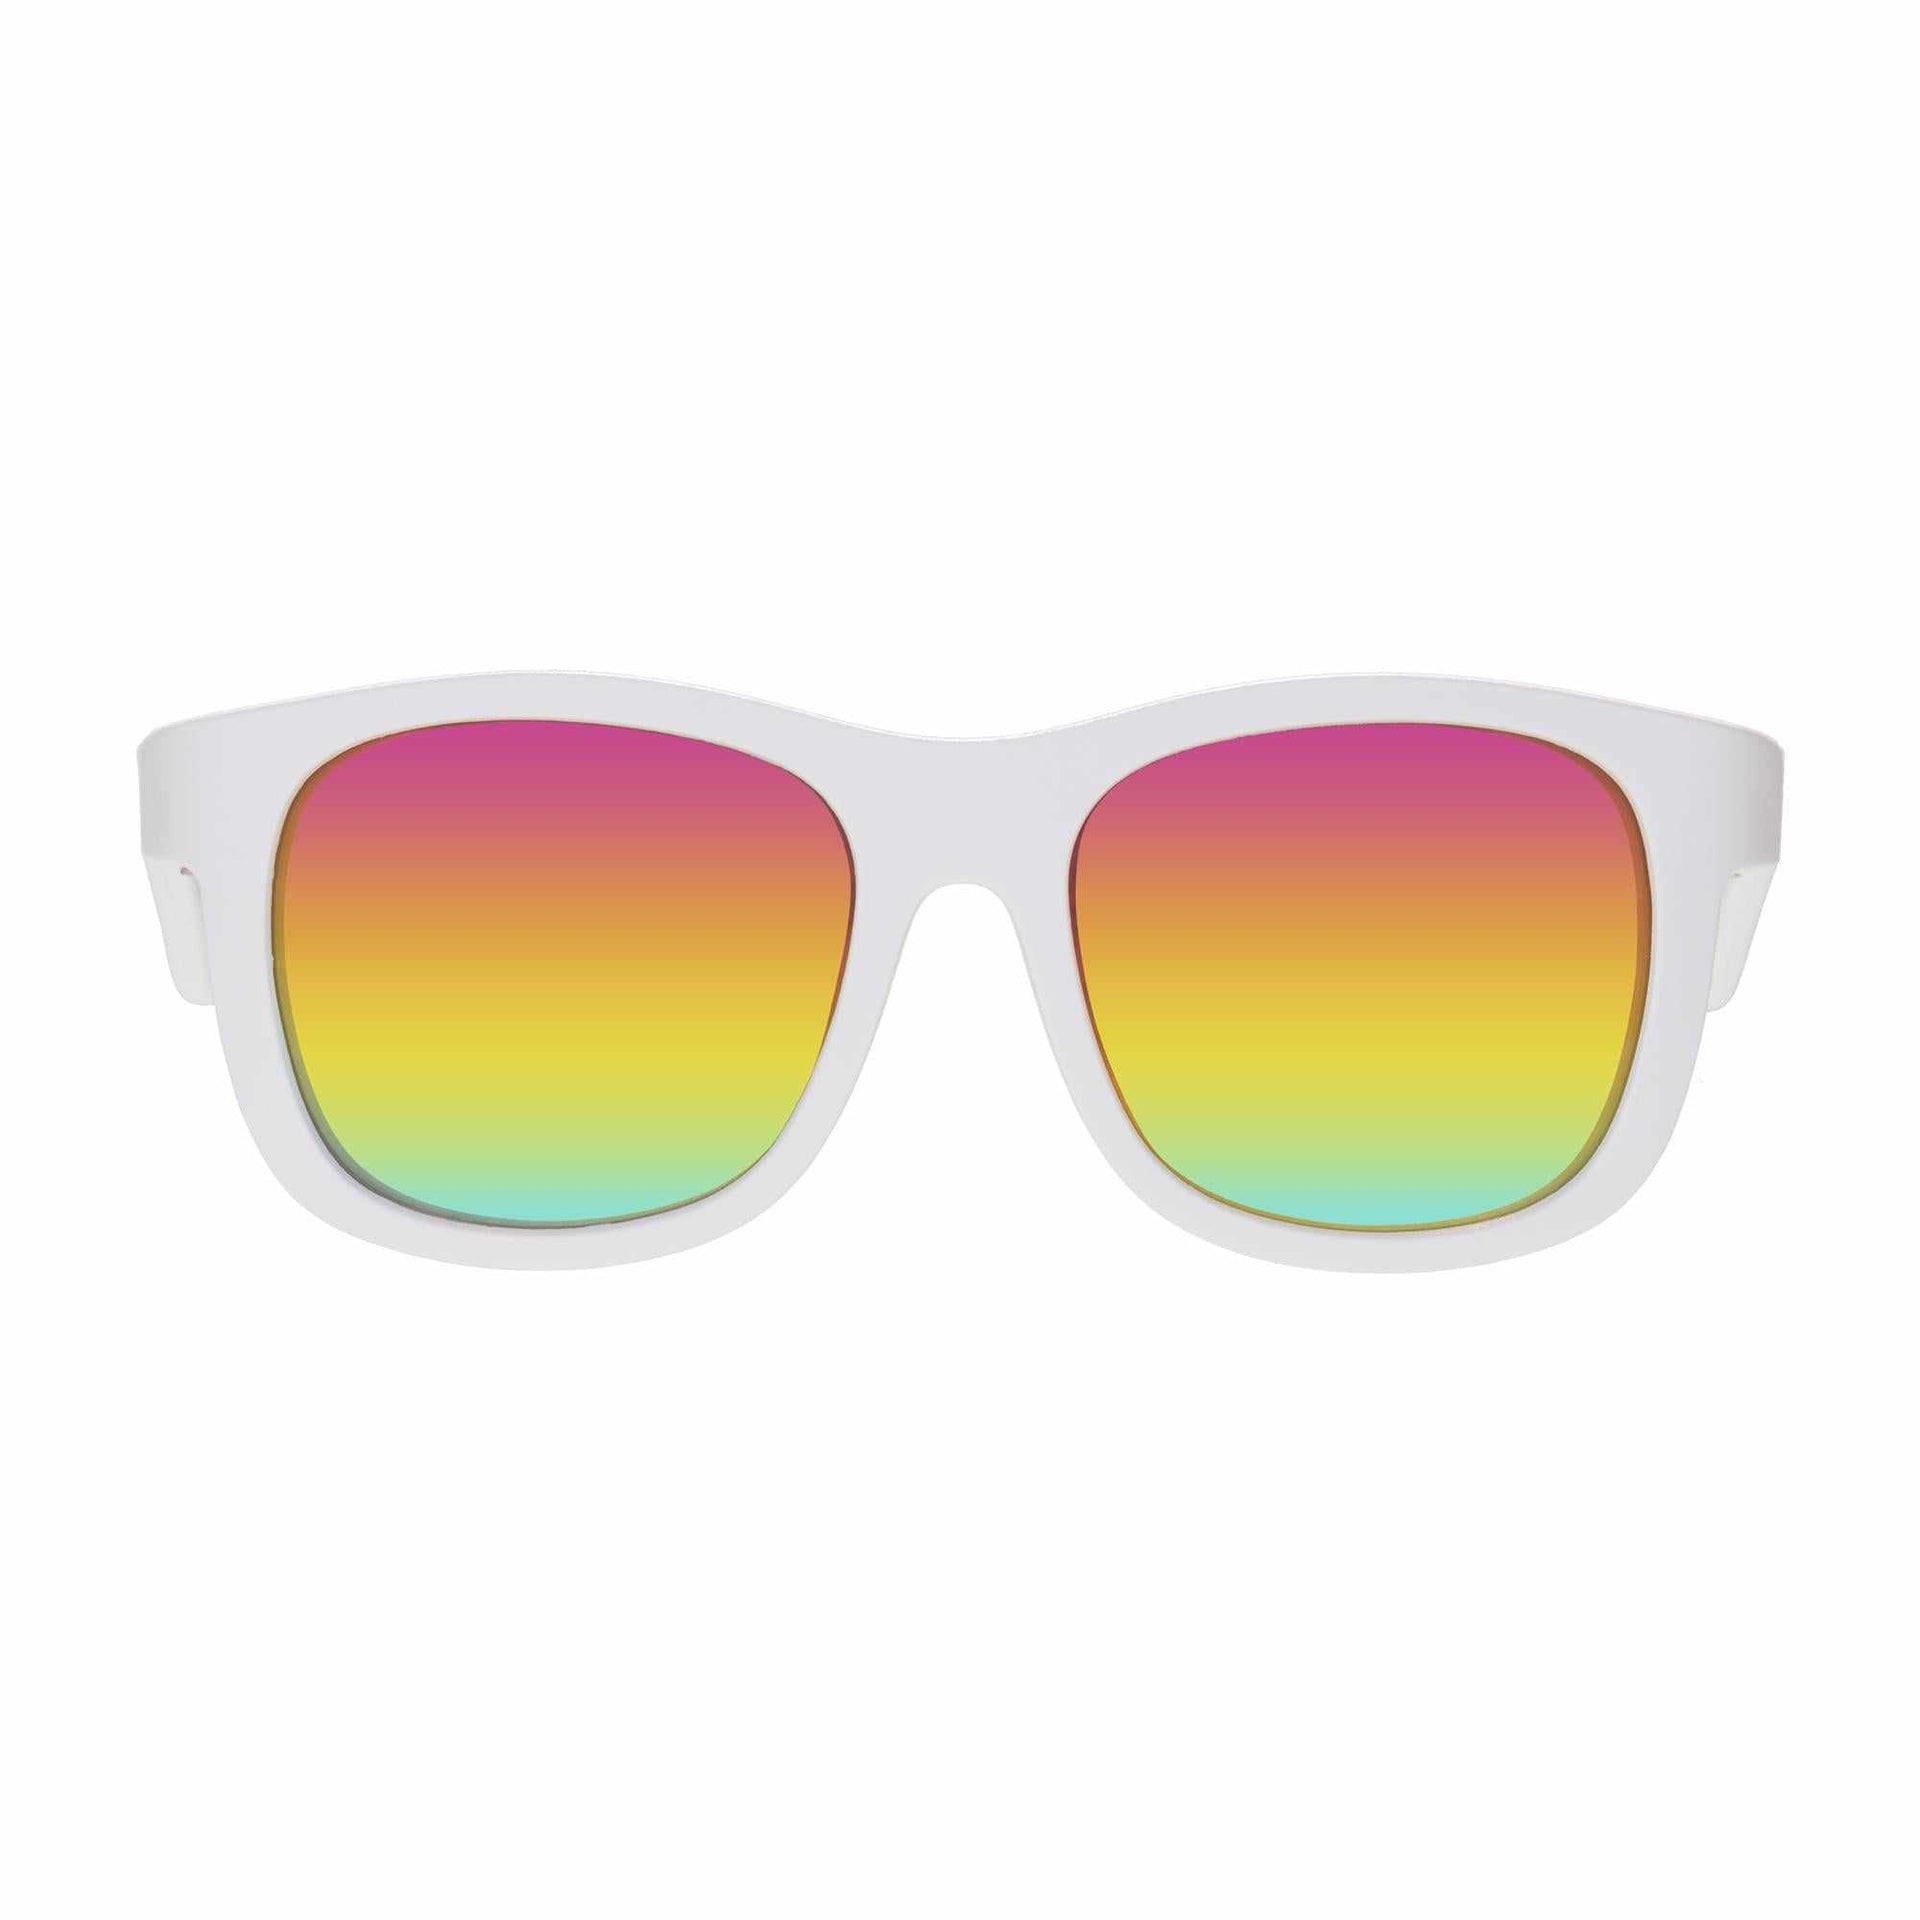 Limited Edition Non-polarized mirrored Sunglasses The Daisy – Babiators  Canada